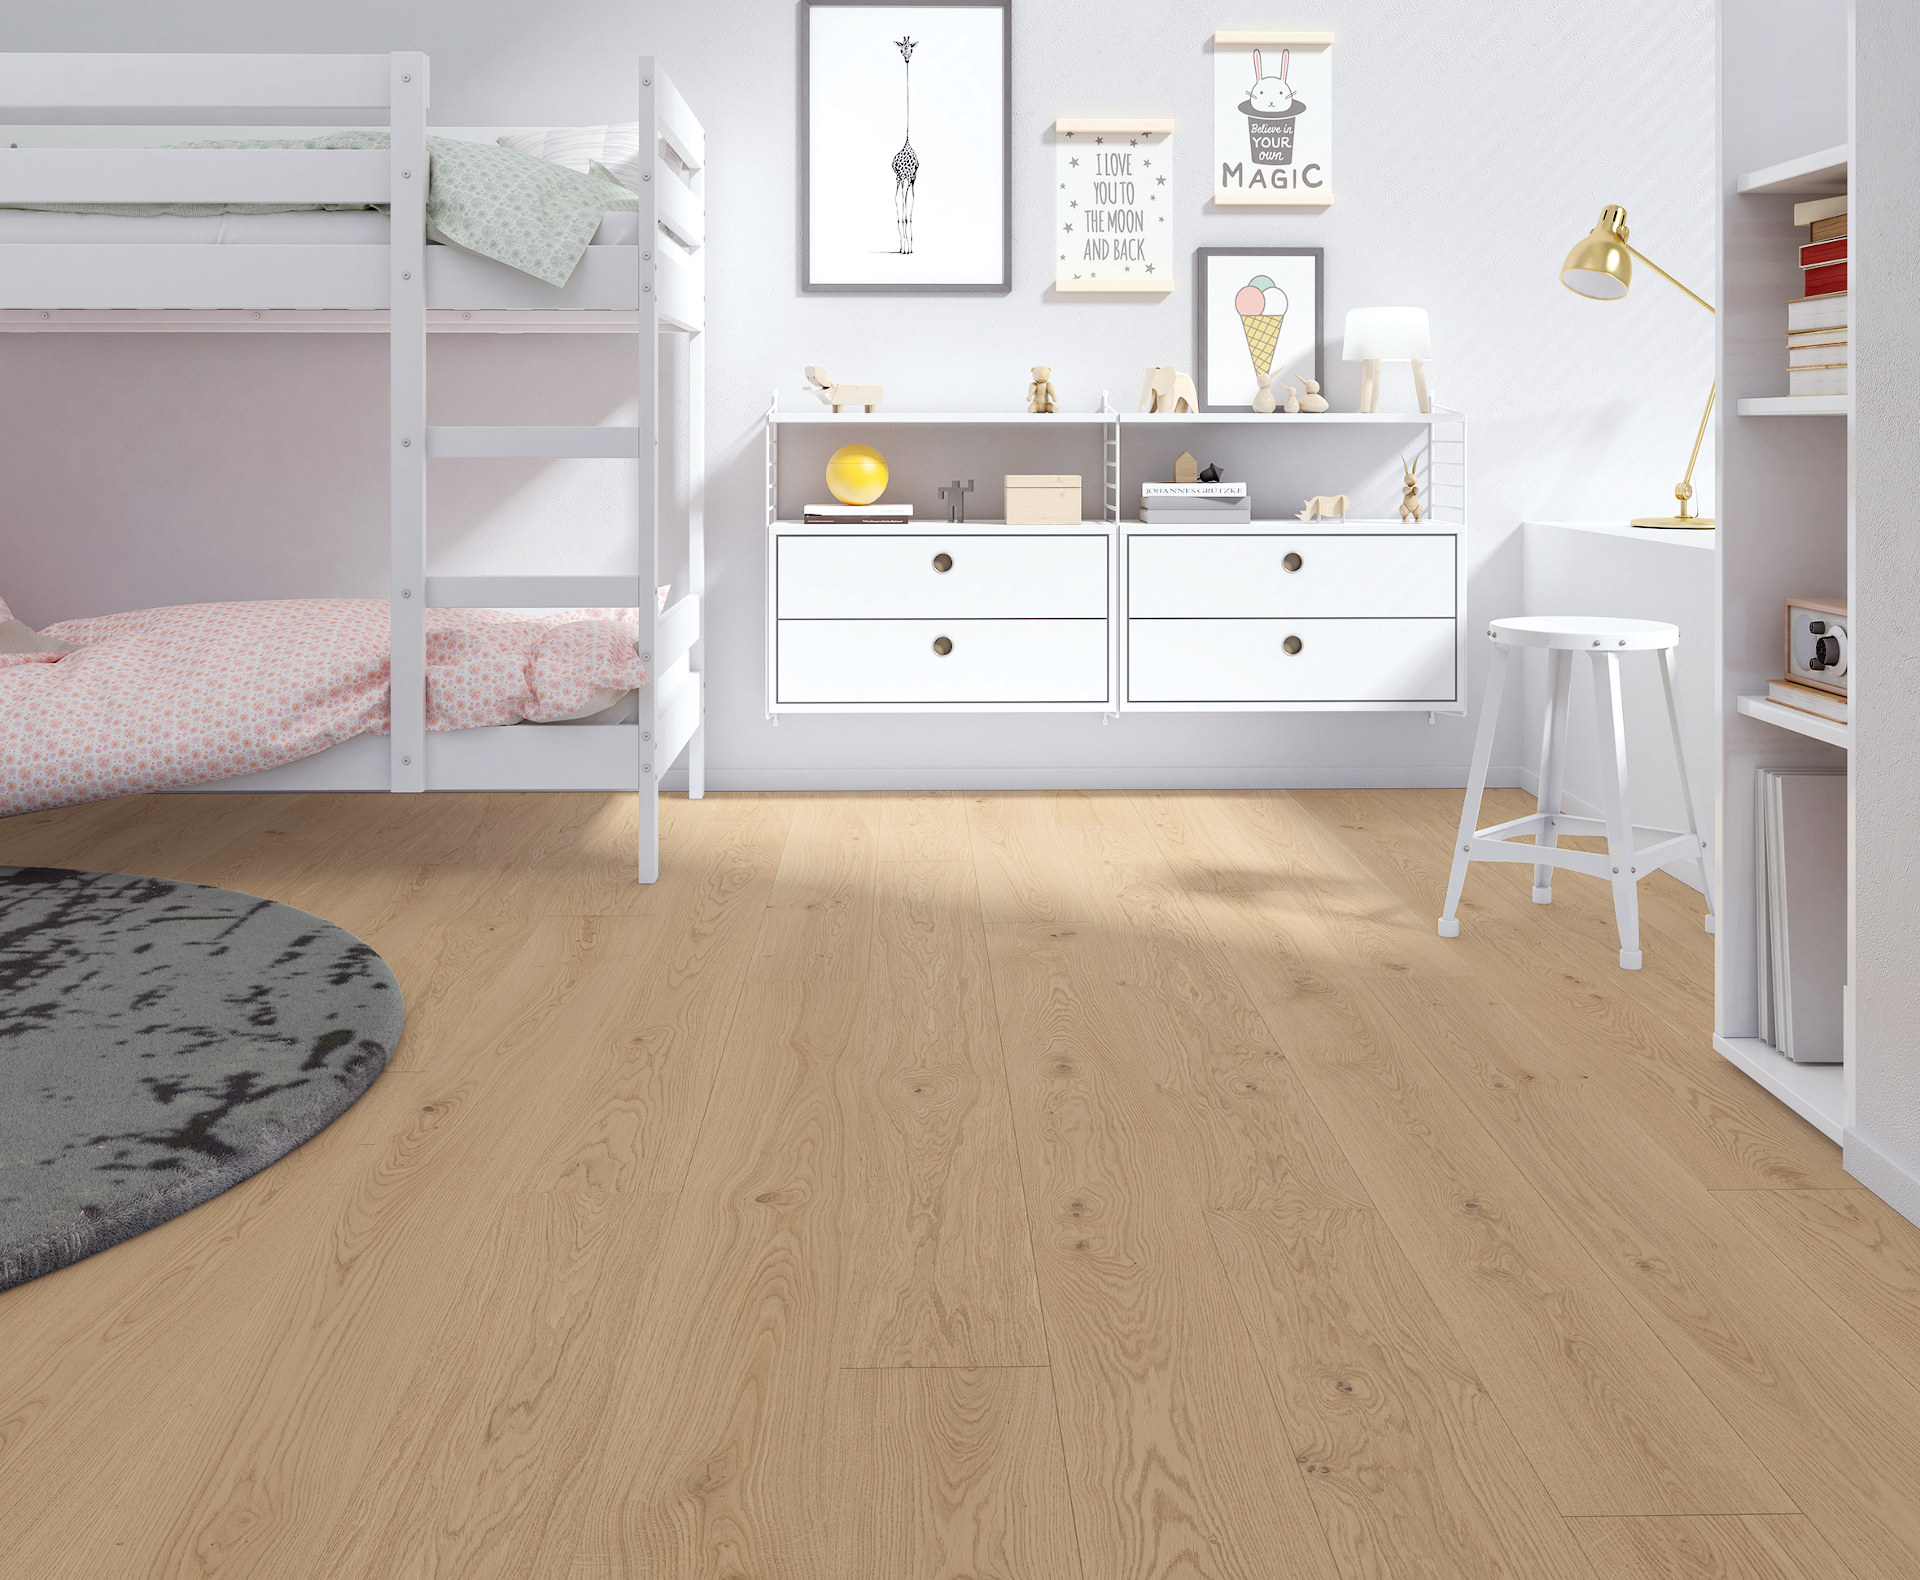 Holzbodenbelag eignet sich als Kinderzimmer Boden